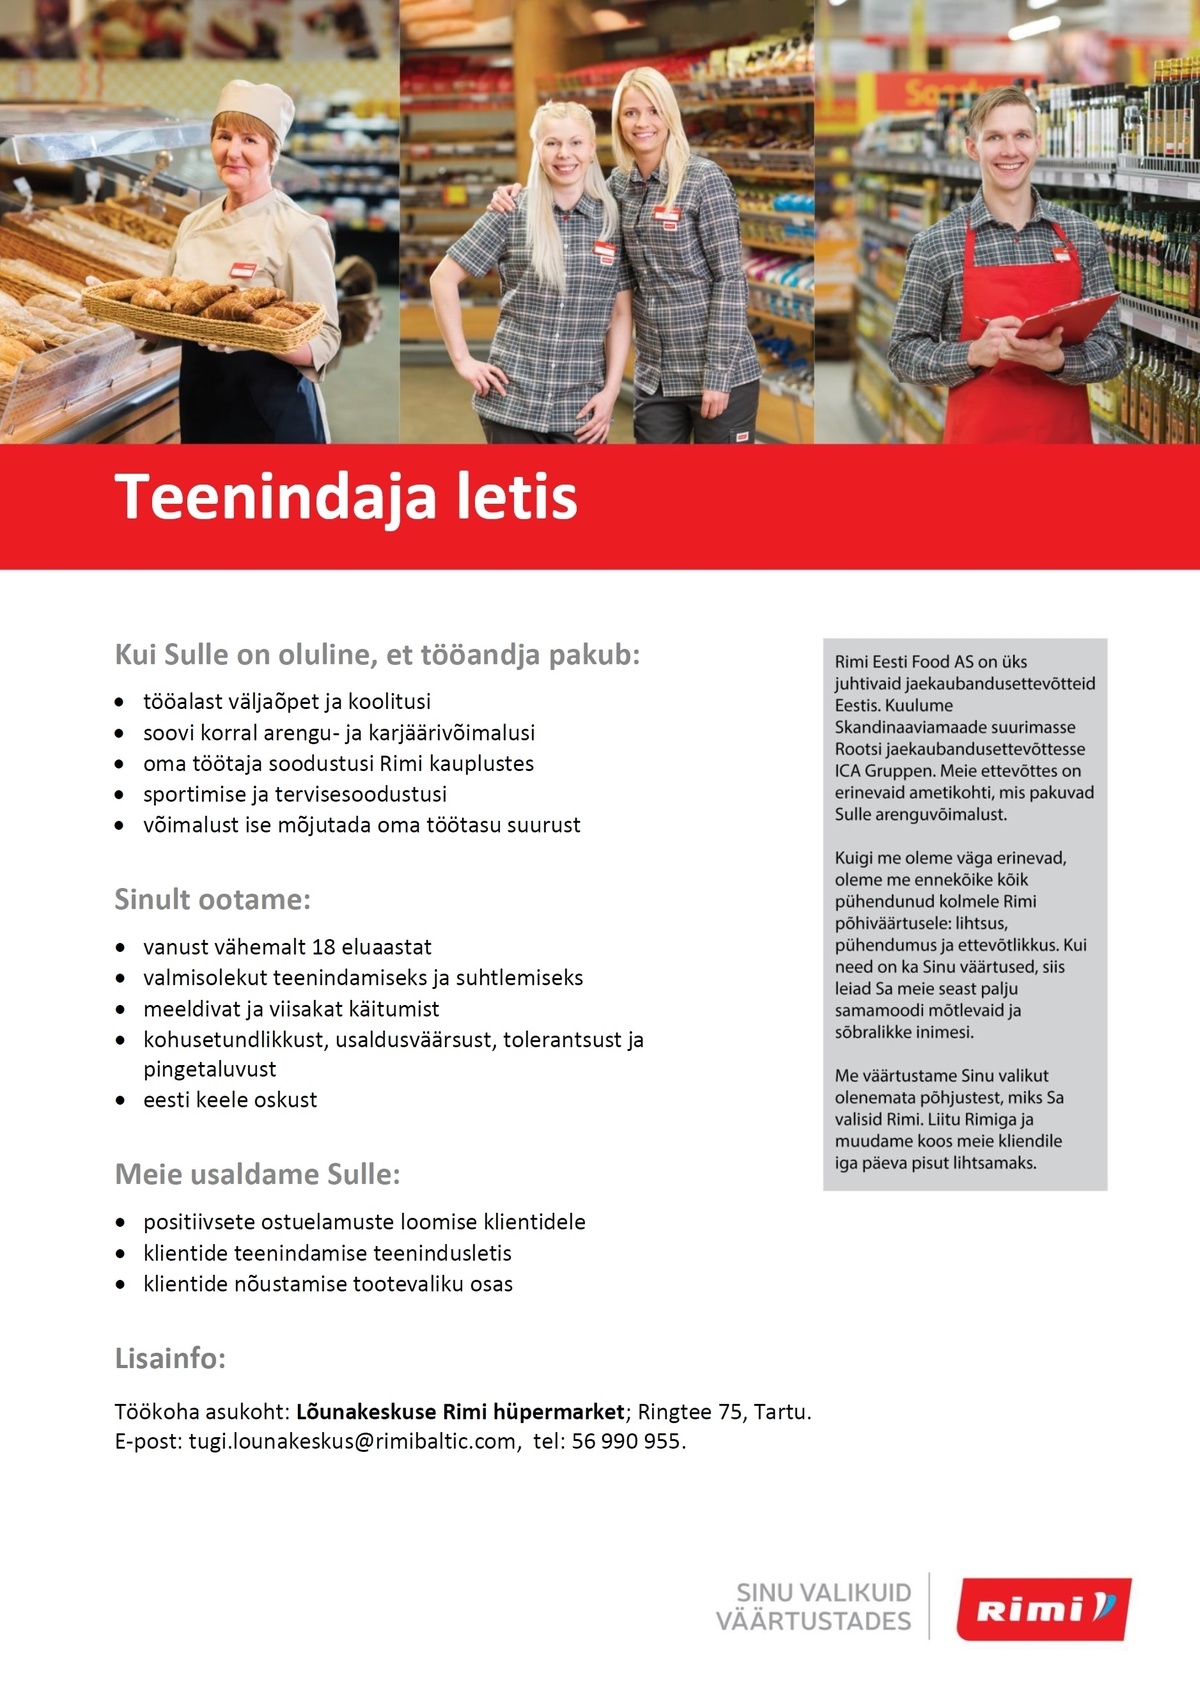 Rimi Eesti Food AS Teenindaja (letis) - Lõunakeskuse Rimi hüpermarket